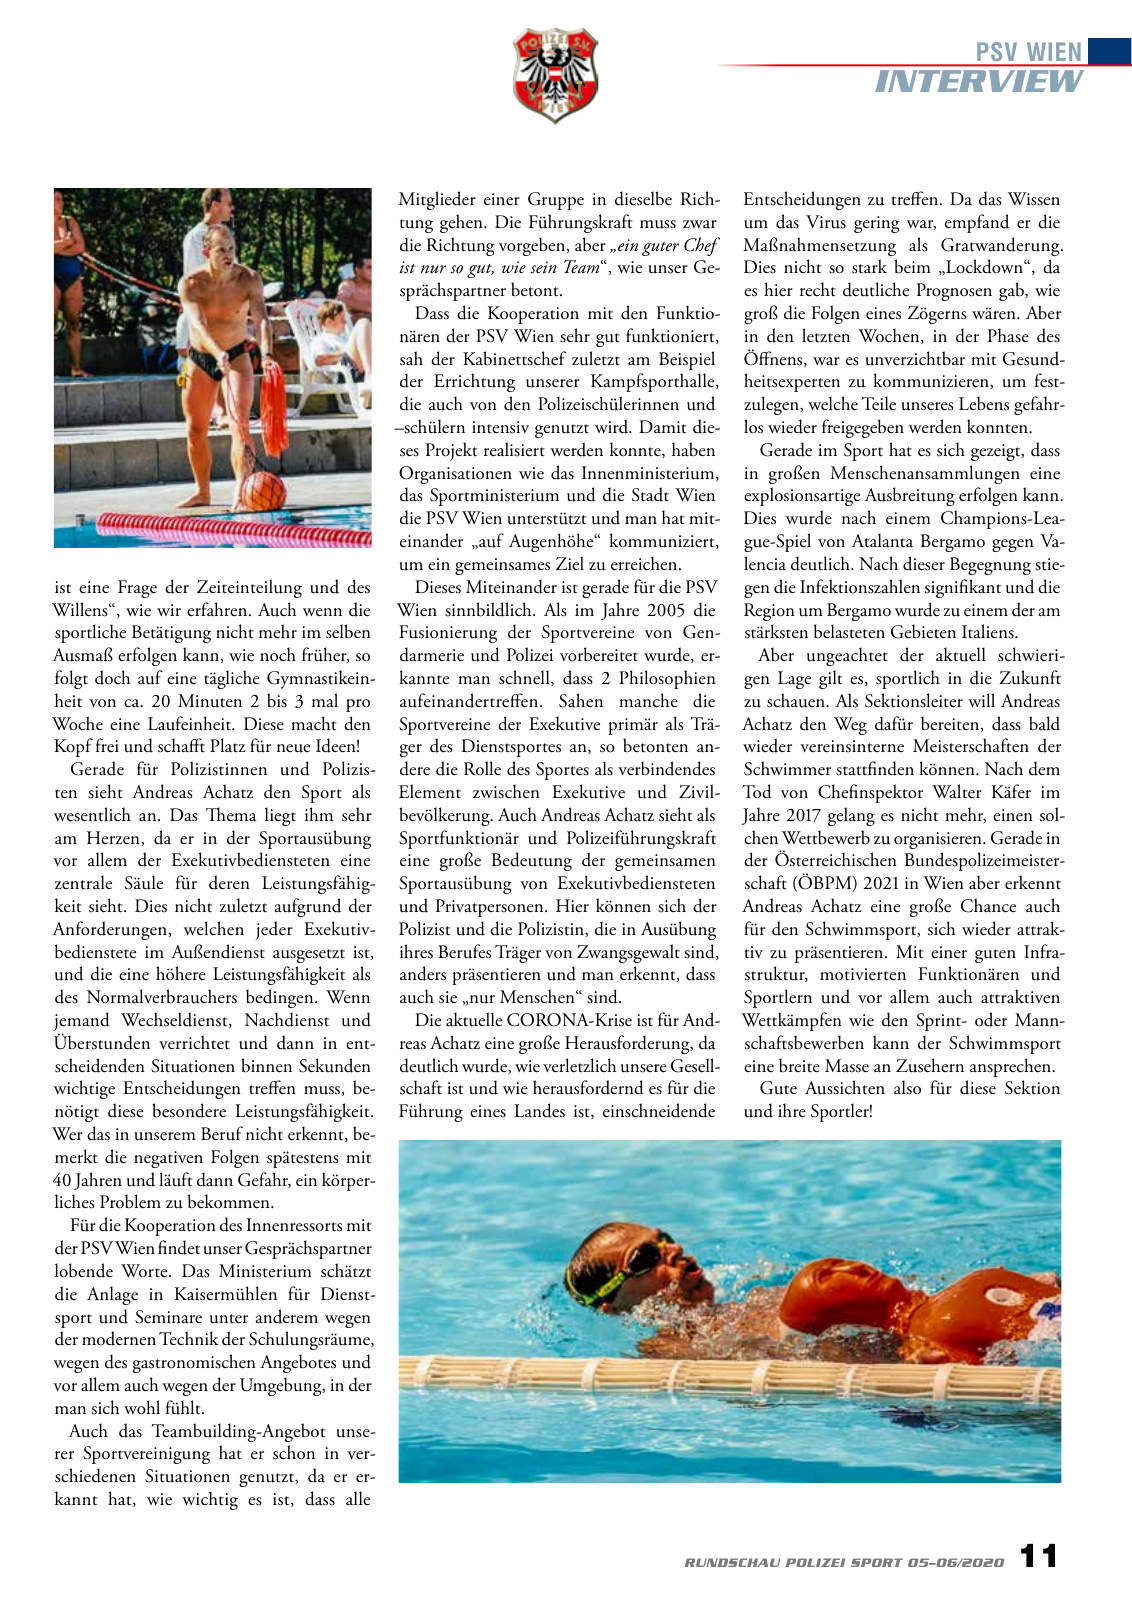 Vorschau Rundschau Polizei Sport 05-06/2020 Seite 11